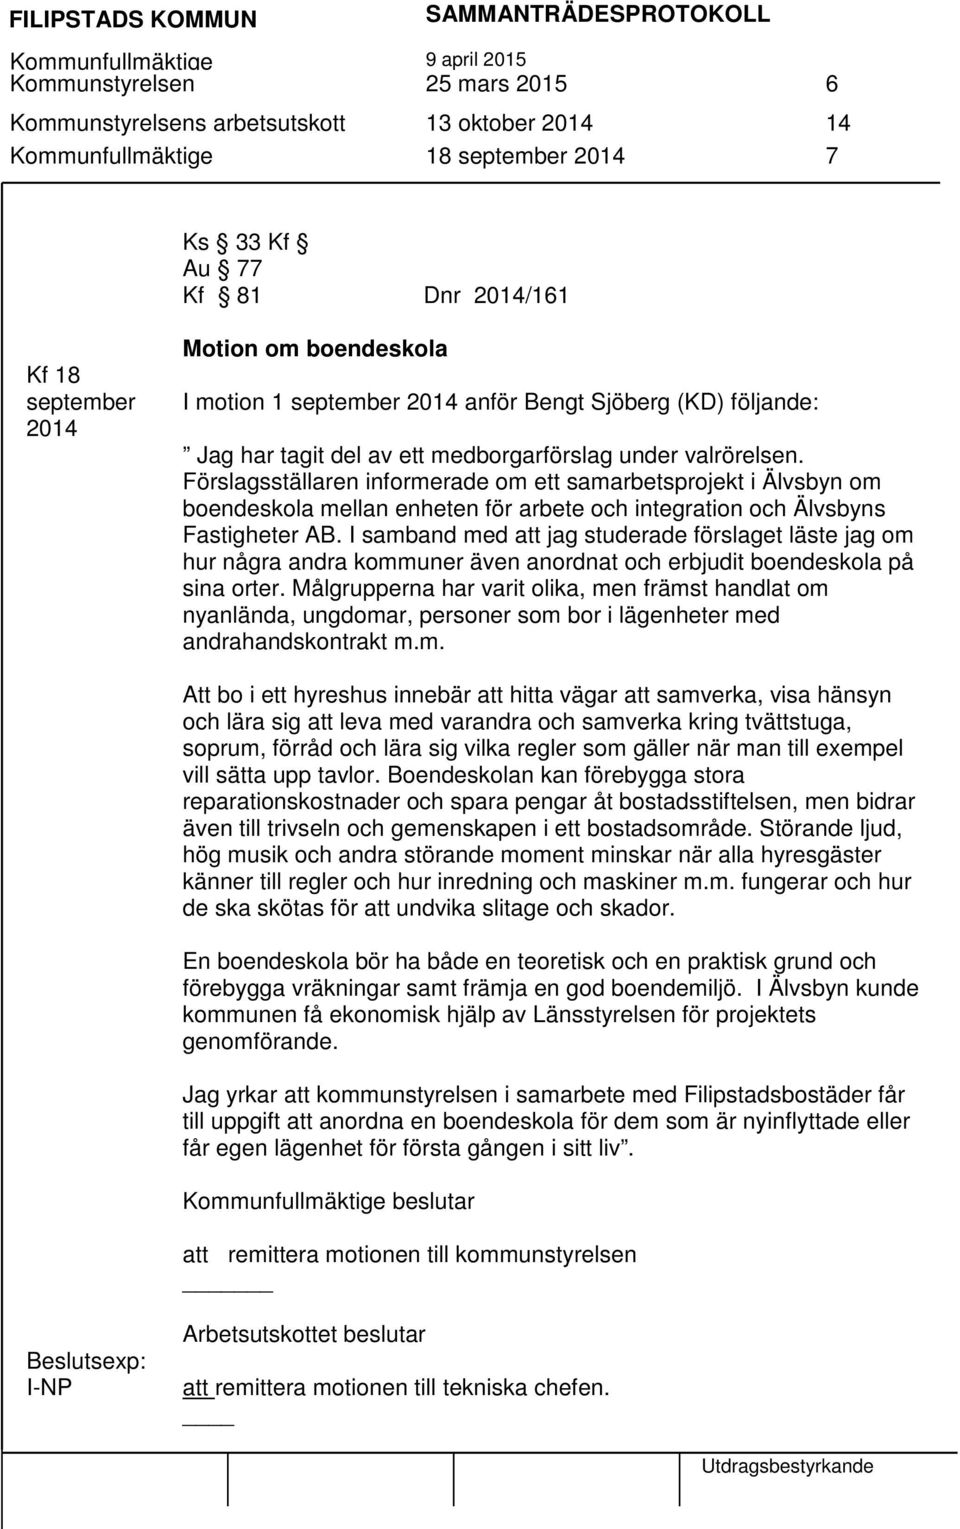 Förslagsställaren informerade om ett samarbetsprojekt i Älvsbyn om boendeskola mellan enheten för arbete och integration och Älvsbyns Fastigheter AB.